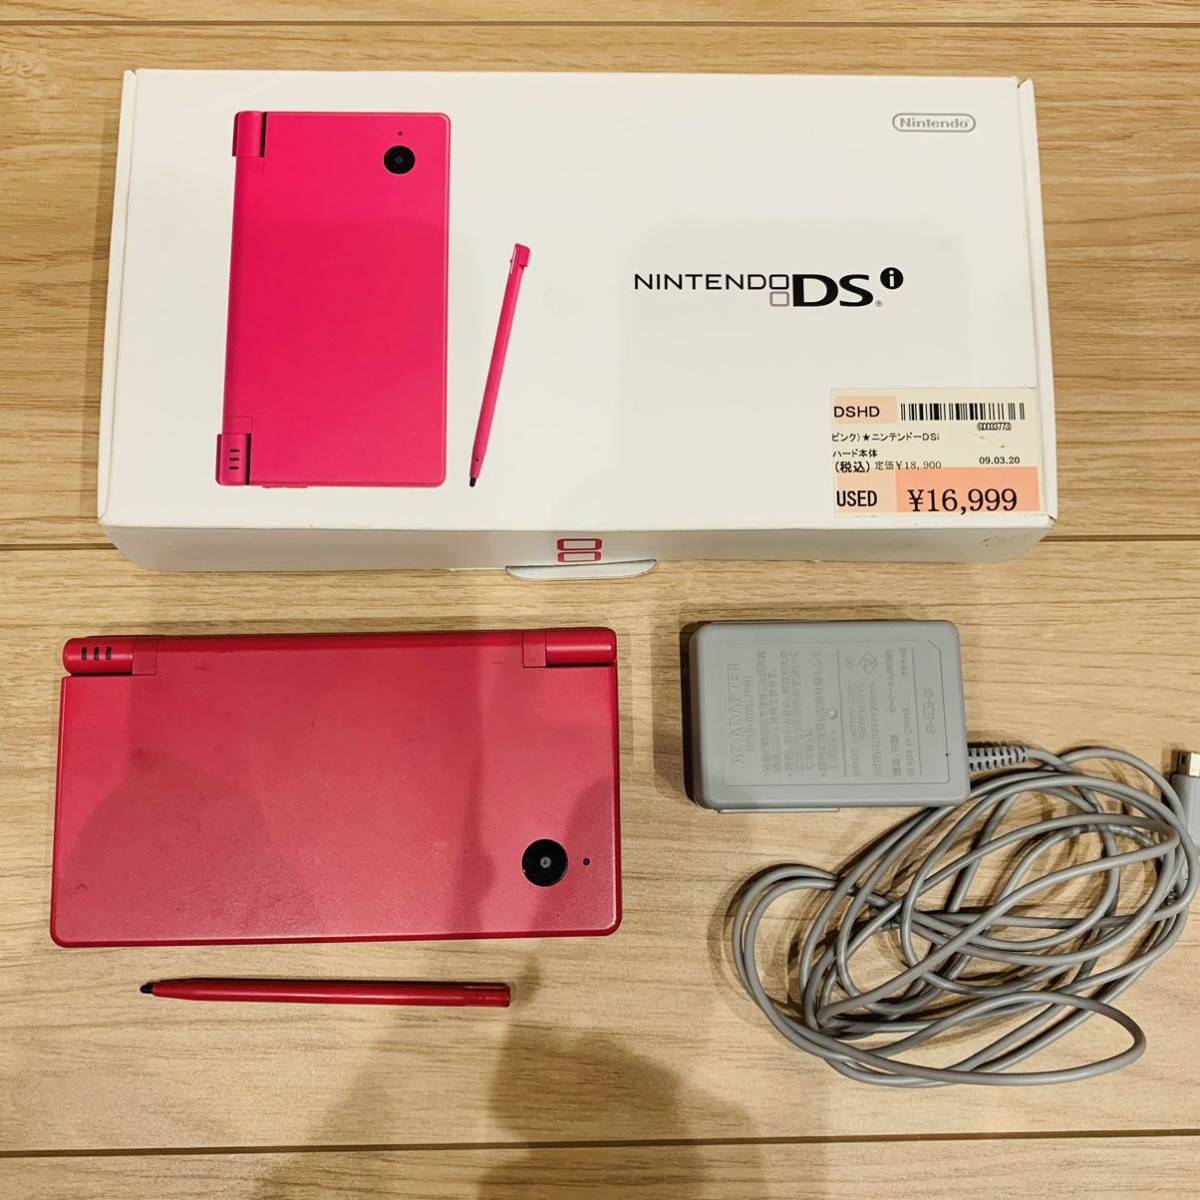 ニンテンドーDSi TWL-001 ピンク ジャンク品 登場! - Nintendo Switch